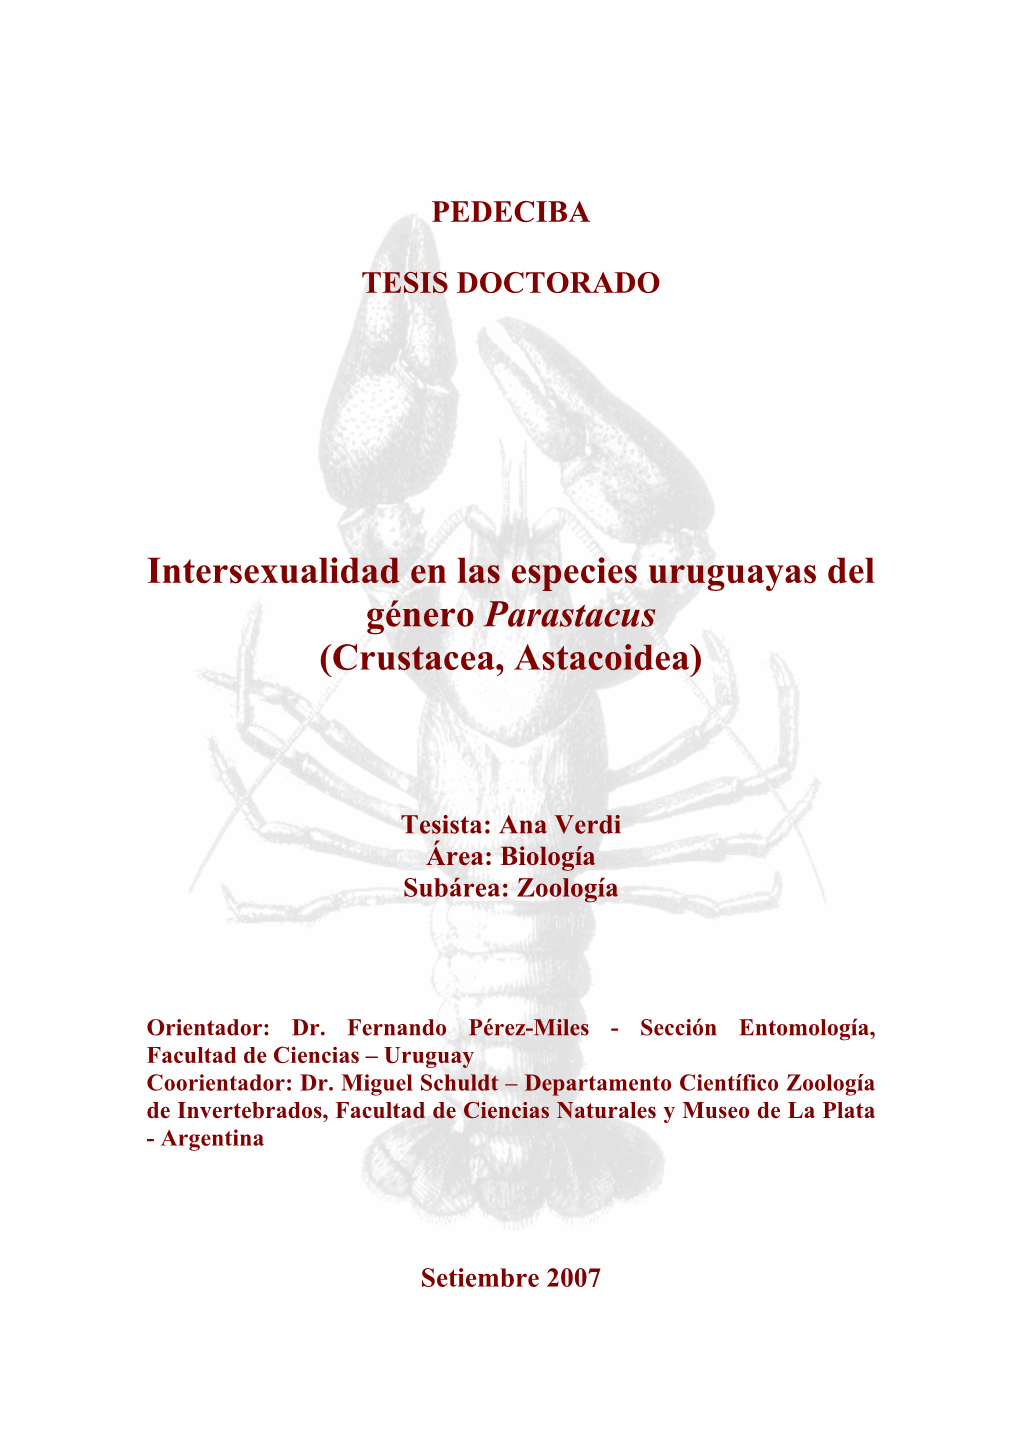 Intersexualidad En Las Especies Uruguayas Del Género Parastacus (Crustacea, Astacoidea)